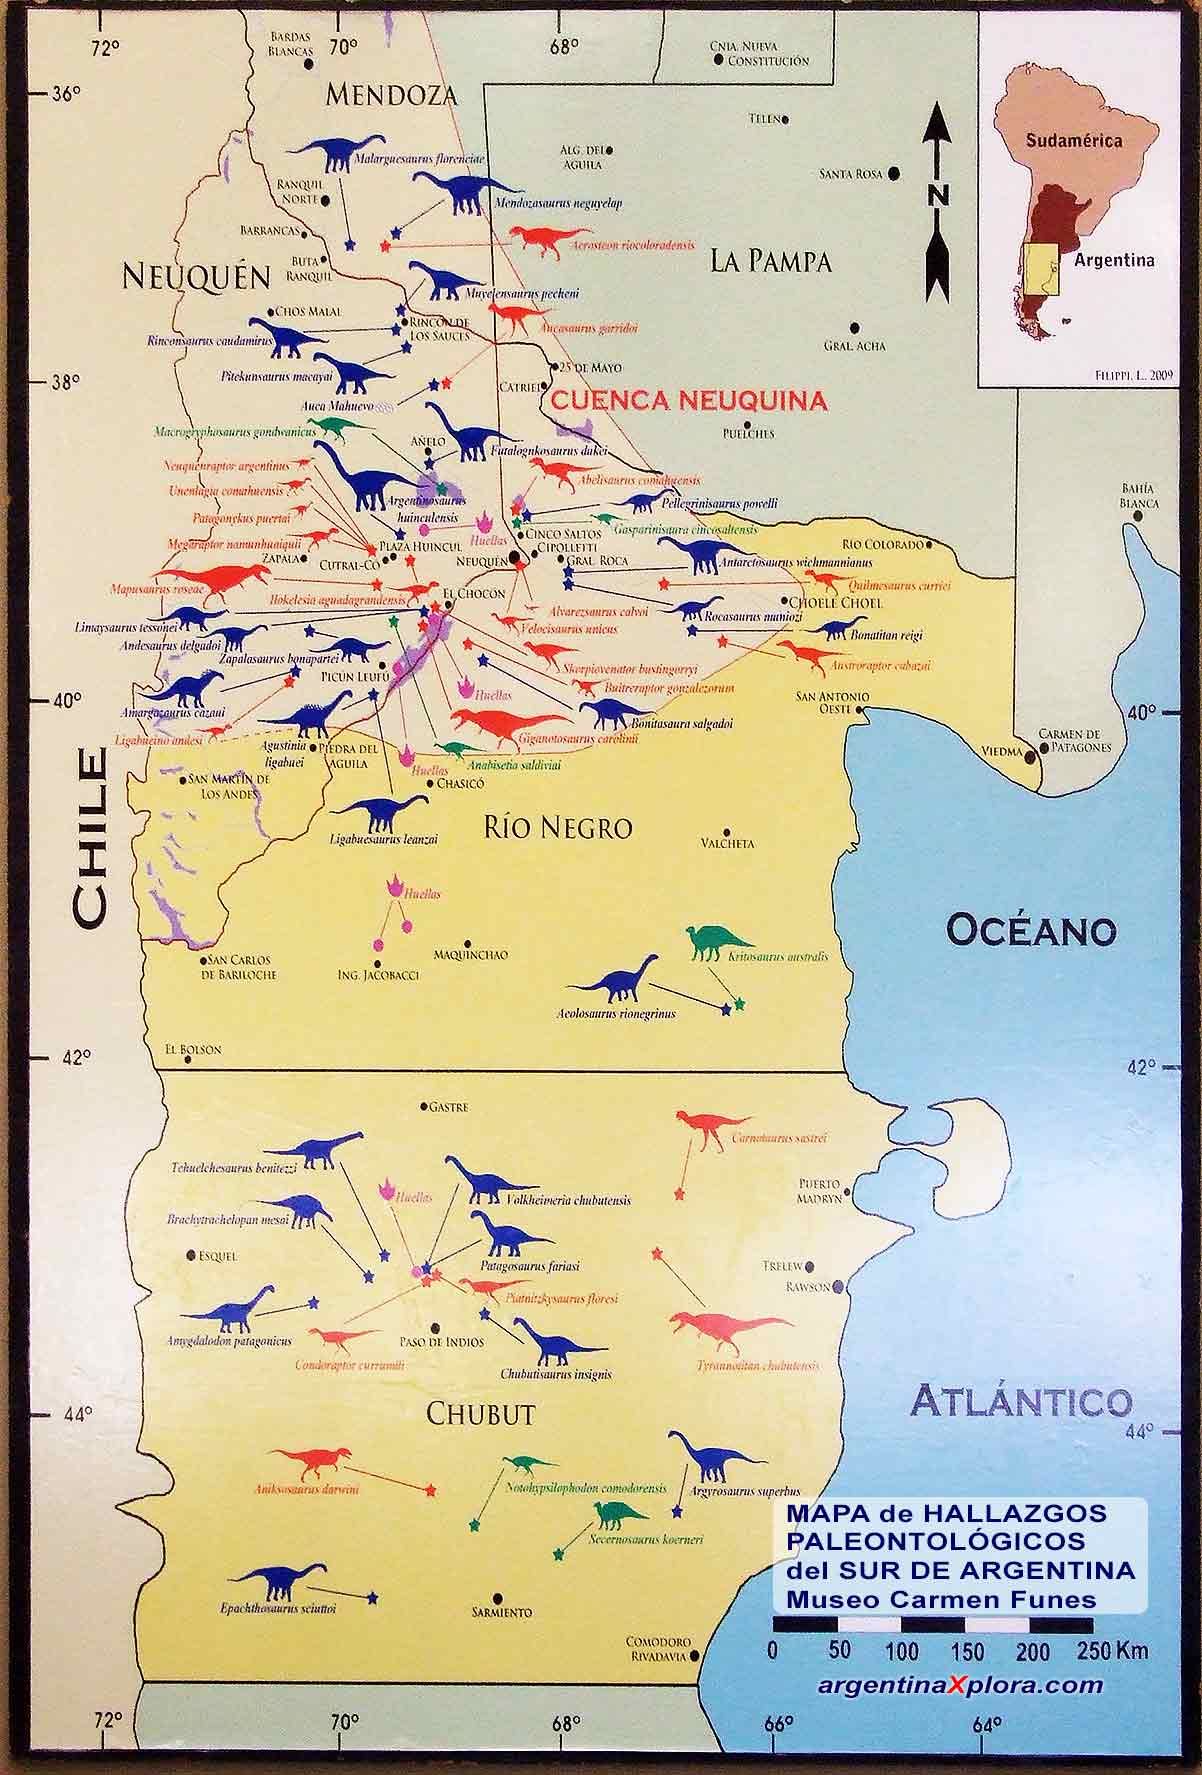 Mapa de los Hallazgos Paleontológicos del Sur de Argentina Museo Carmen Funes de Cutral-Có, Neuquén